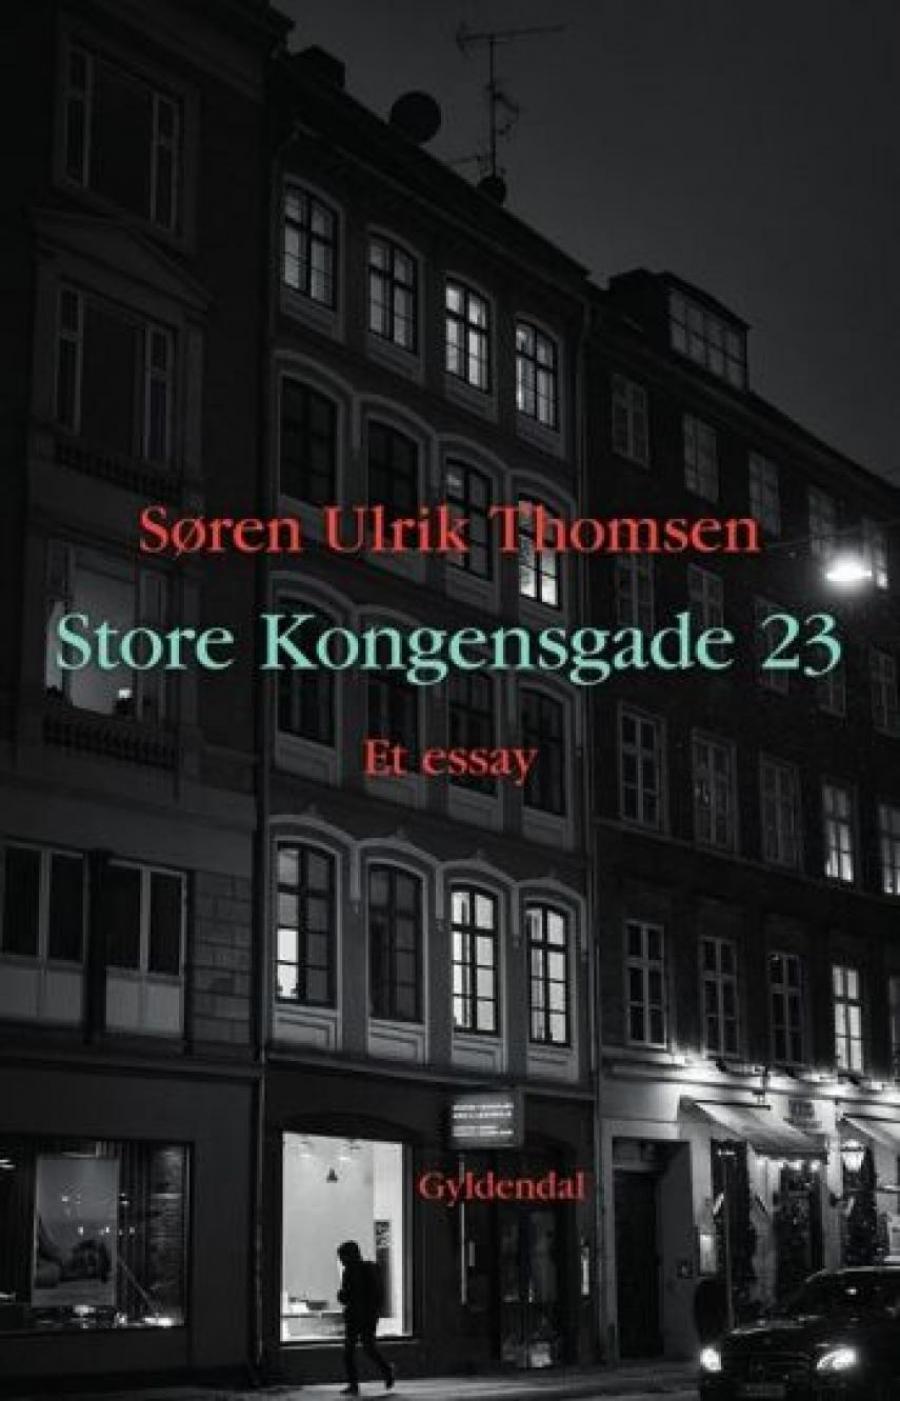 Store Kongensgade 23 af Søren Ulrik Thomsen